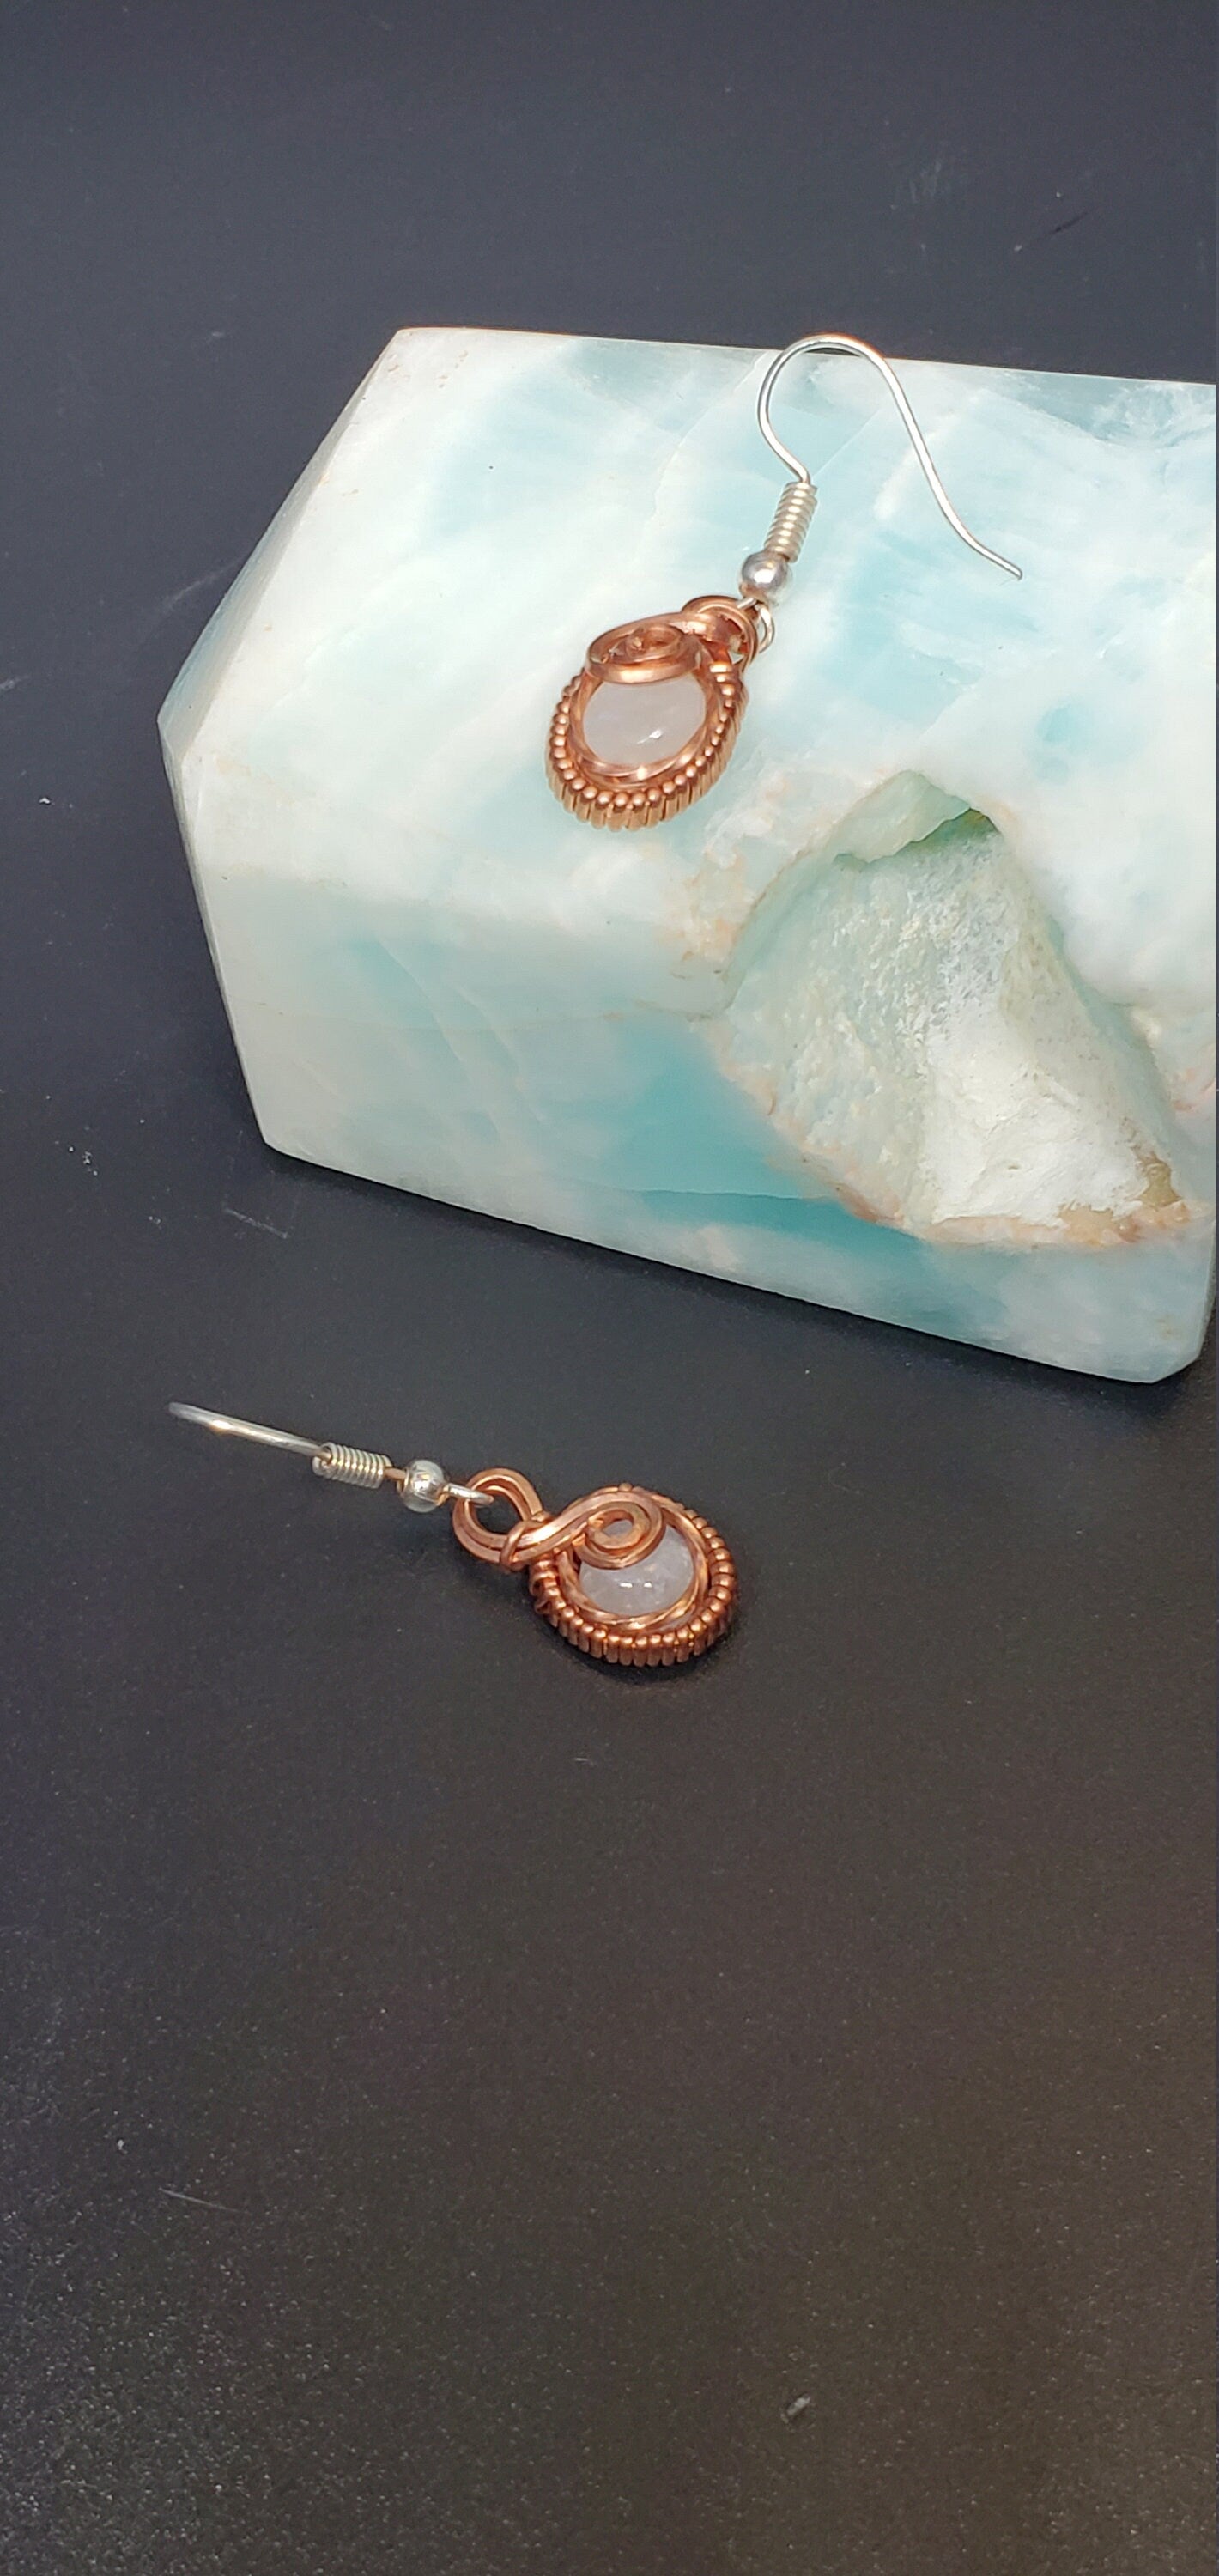 Wire wrapped earrings - moonstone earrings - gemstone earrings - dangle earrings - 7th anniversary- gifts for her - boho earrings -